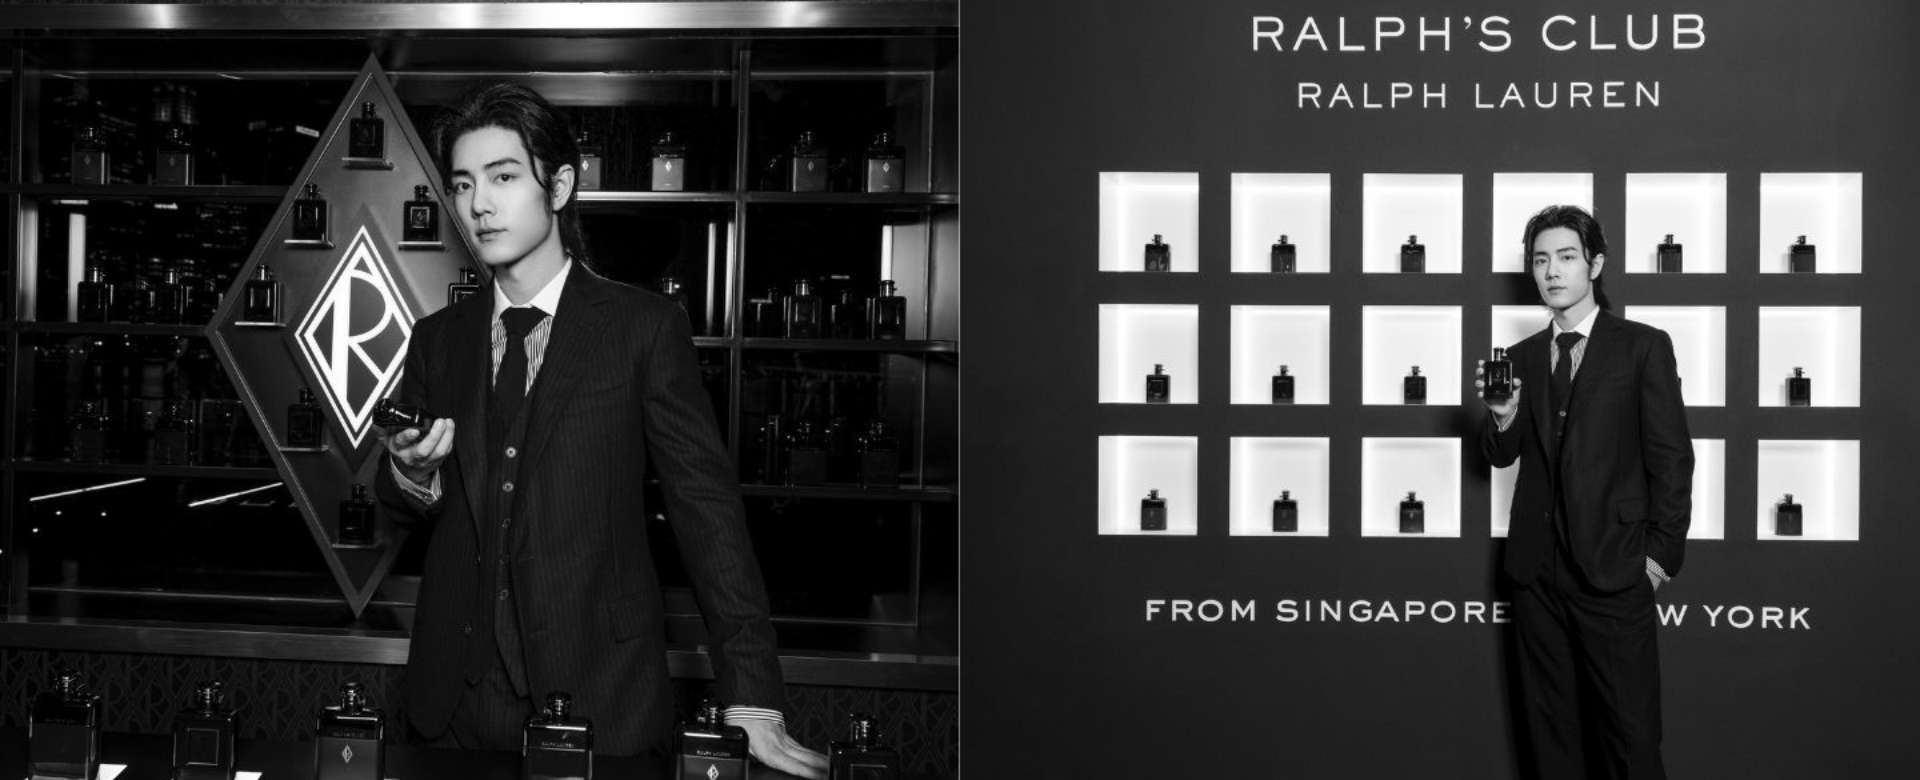 Tiêu Chiến bất ngờ xuất hiện tại sự kiện giới thiệu hương thơm Ralph’s Club Elixir của Ralph Lauren 